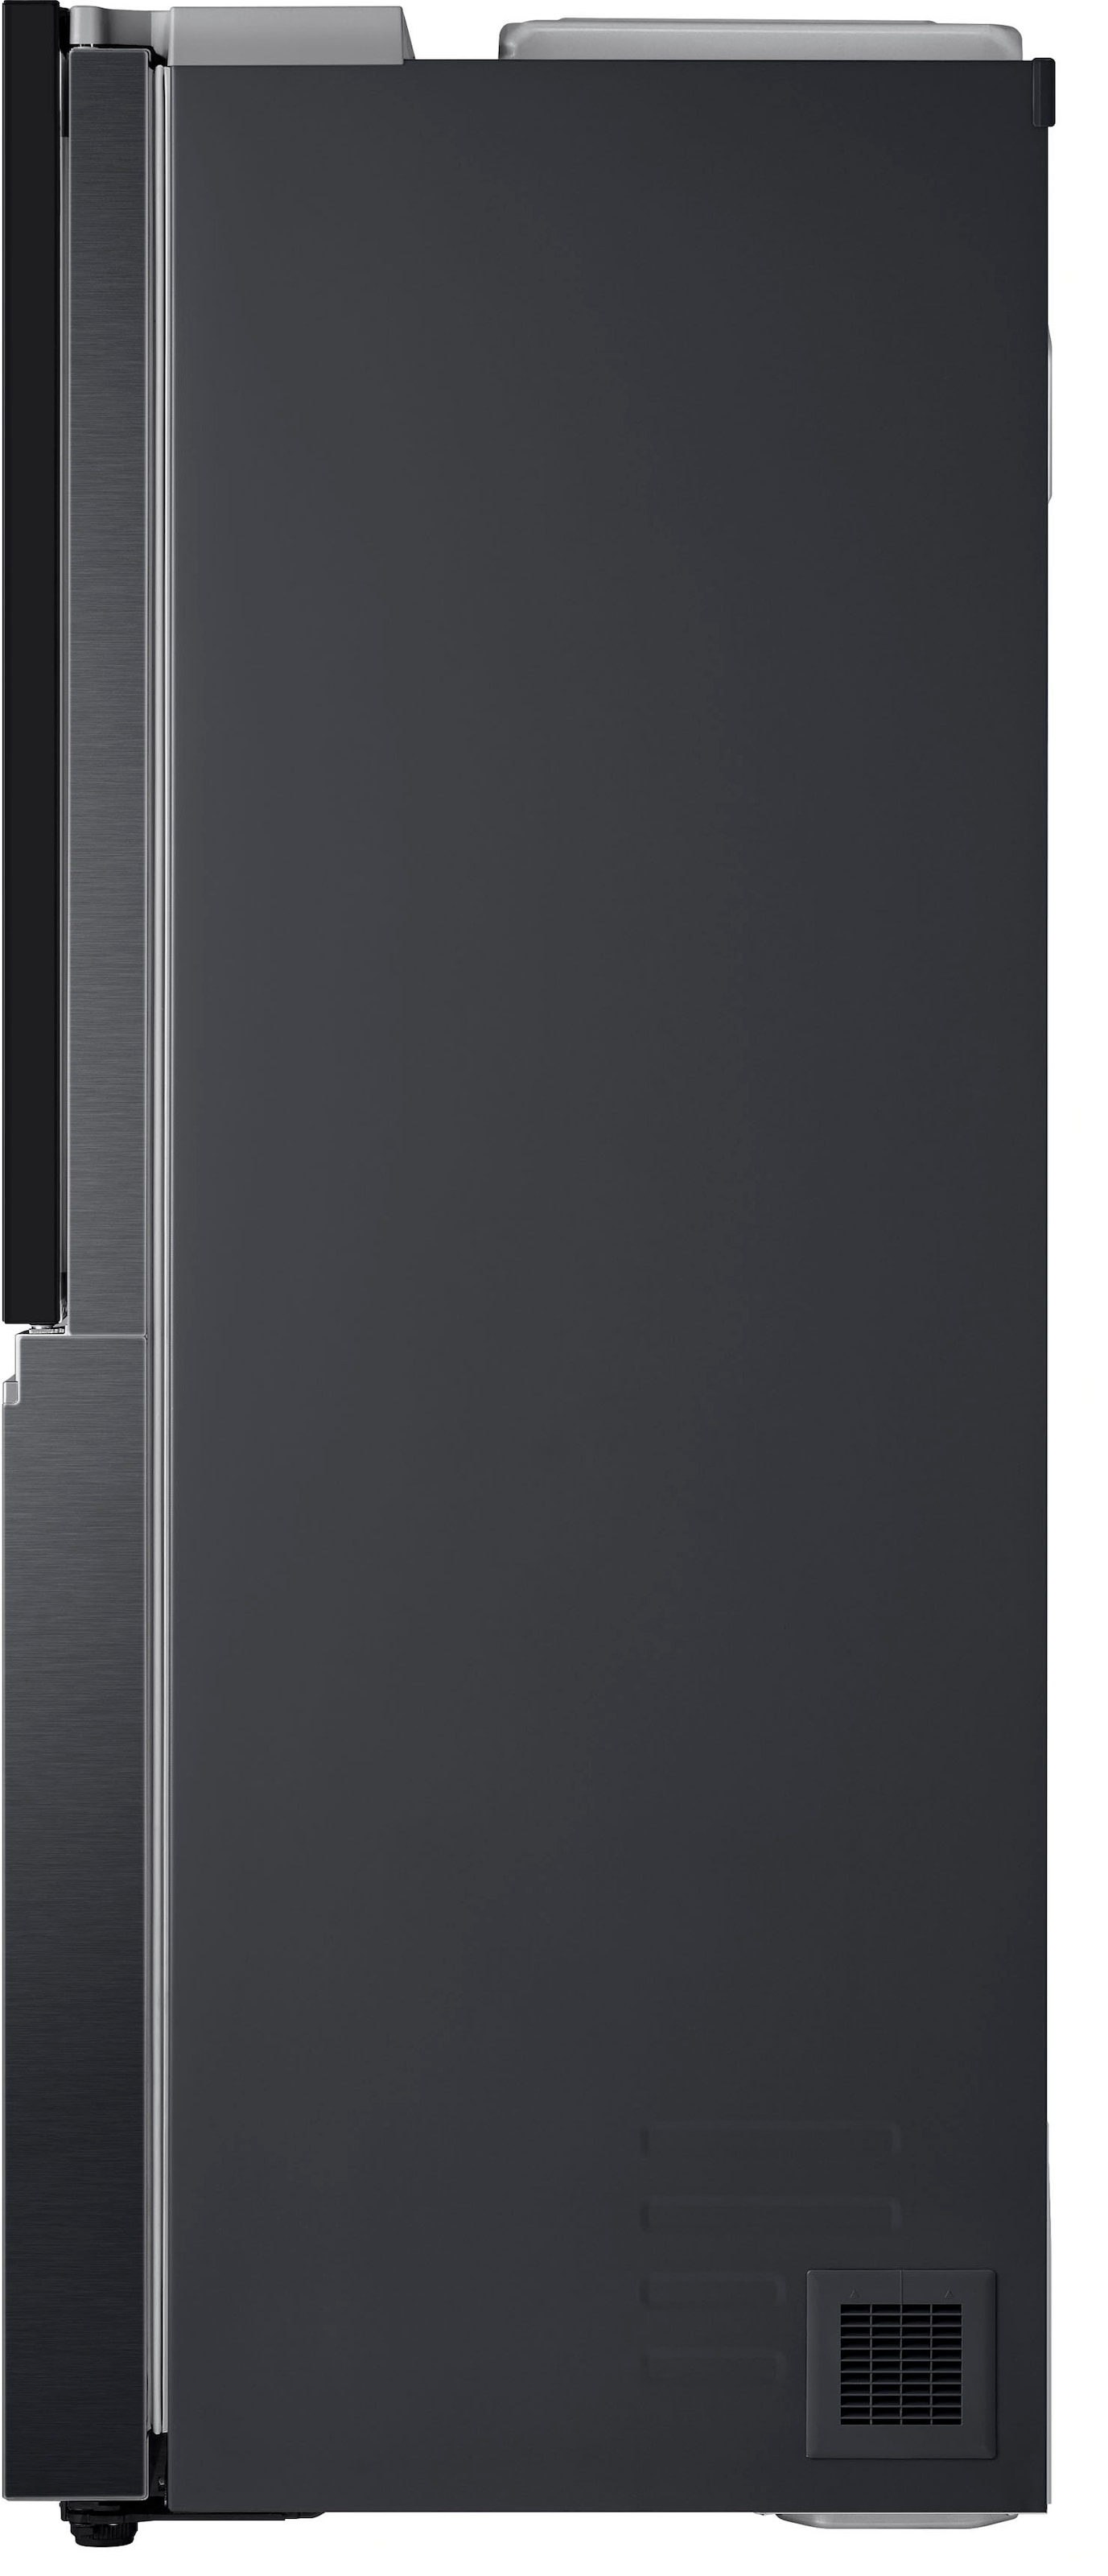 LG Side-by-Side, GSXV91PZAE, 179 cm hoch, 91,3 cm breit auf Rechnung kaufen